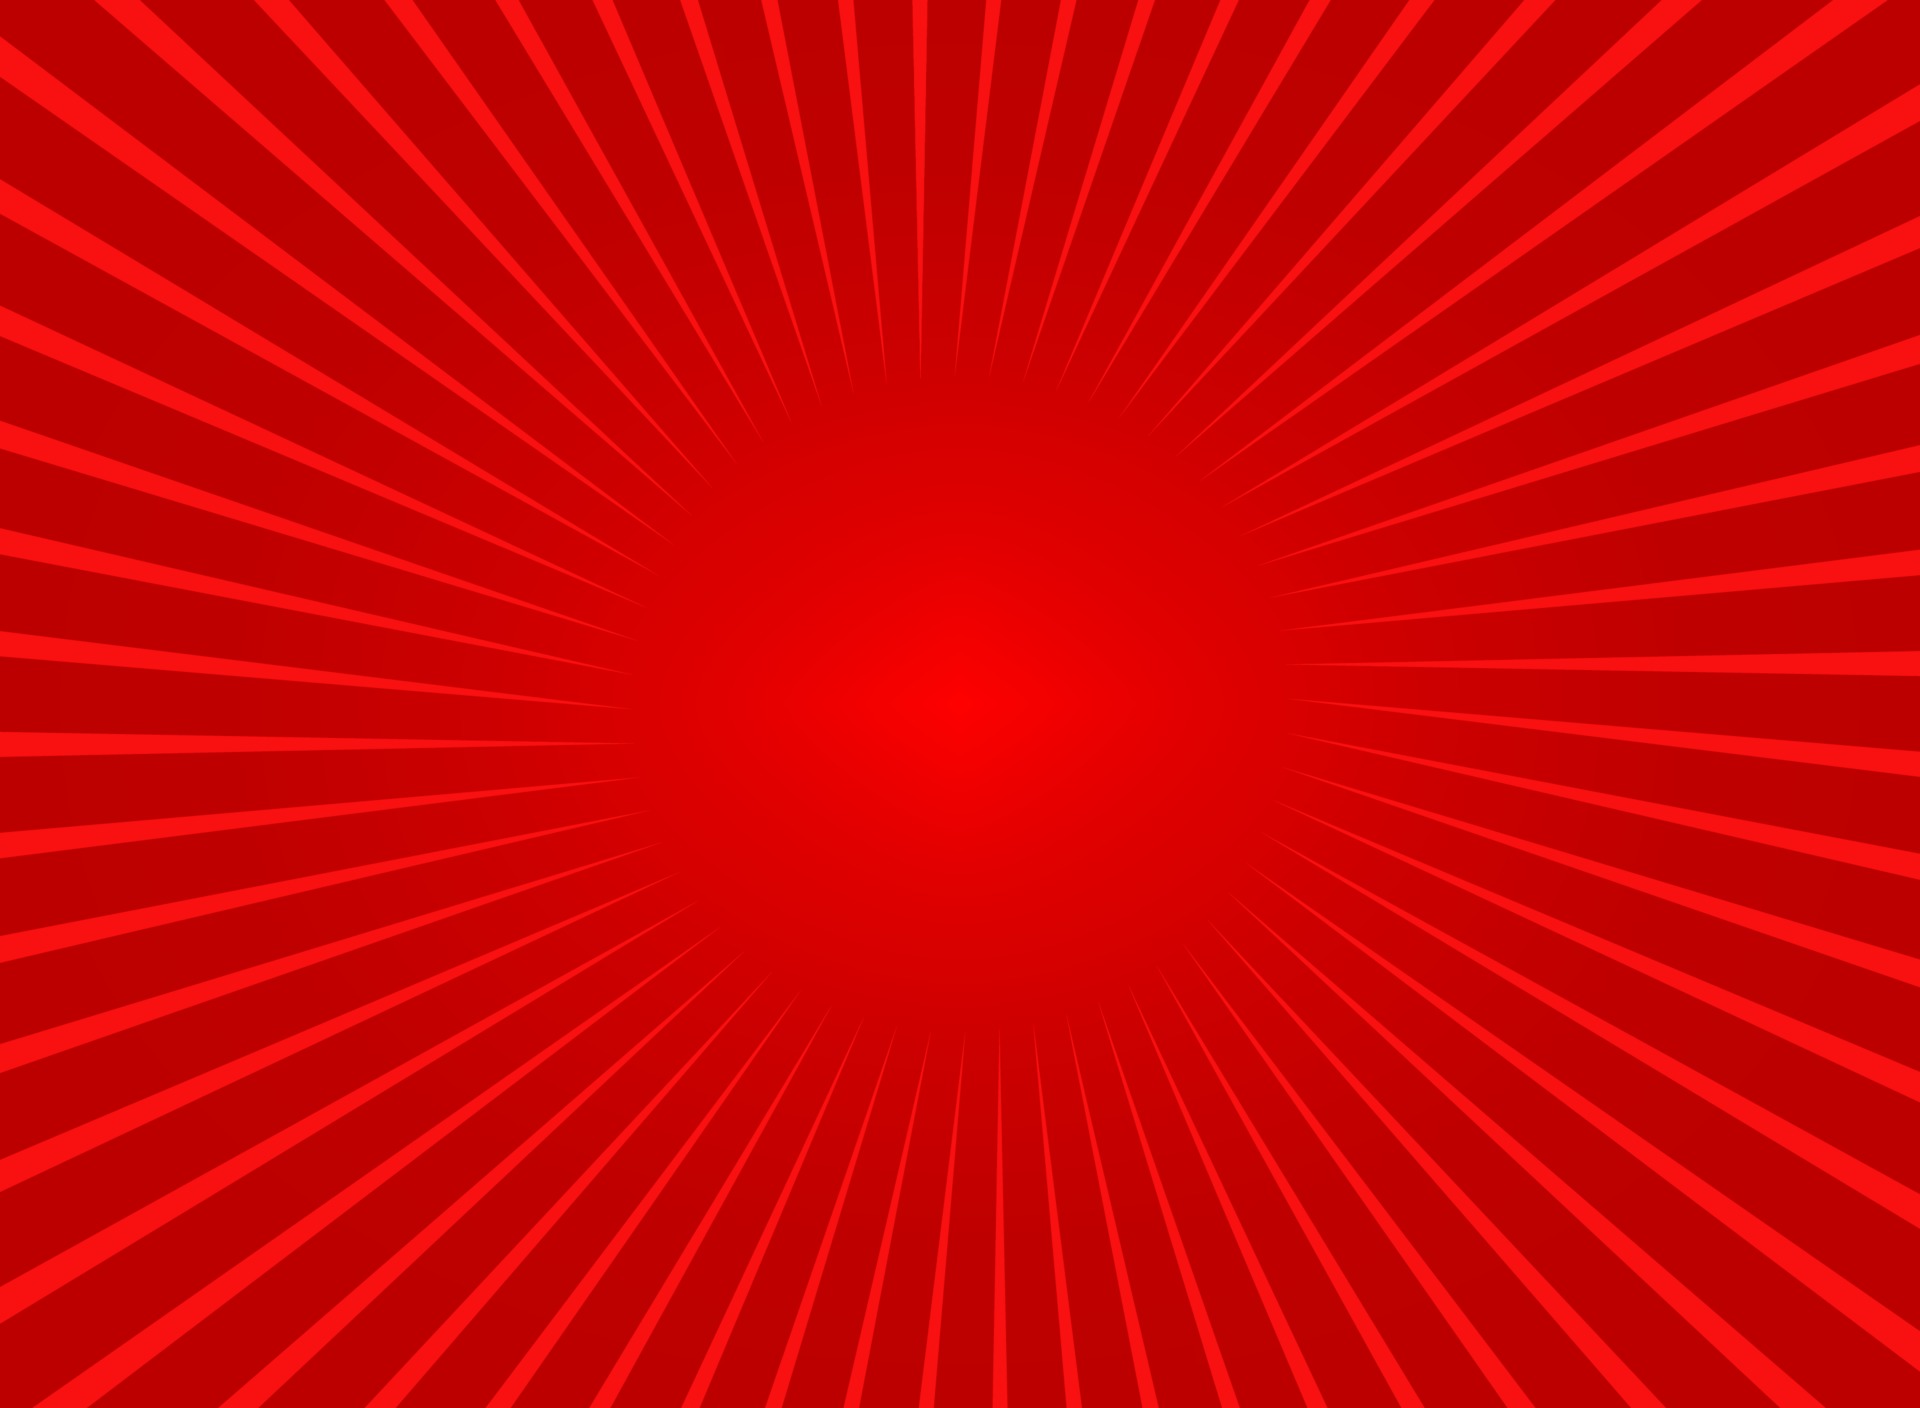 Nghệ thuật vector sóng đỏ luôn ẩn chứa sự tinh tế và tạo hứng khởi cho người xem. Biểu tượng và đồ họa hấp dẫn để tải về miễn phí, nền đỏ thật sự là sự lựa chọn thú vị. Hãy xem ngay hình ảnh liên quan để khám phá vẻ đẹp độc đáo của thiết kế này.